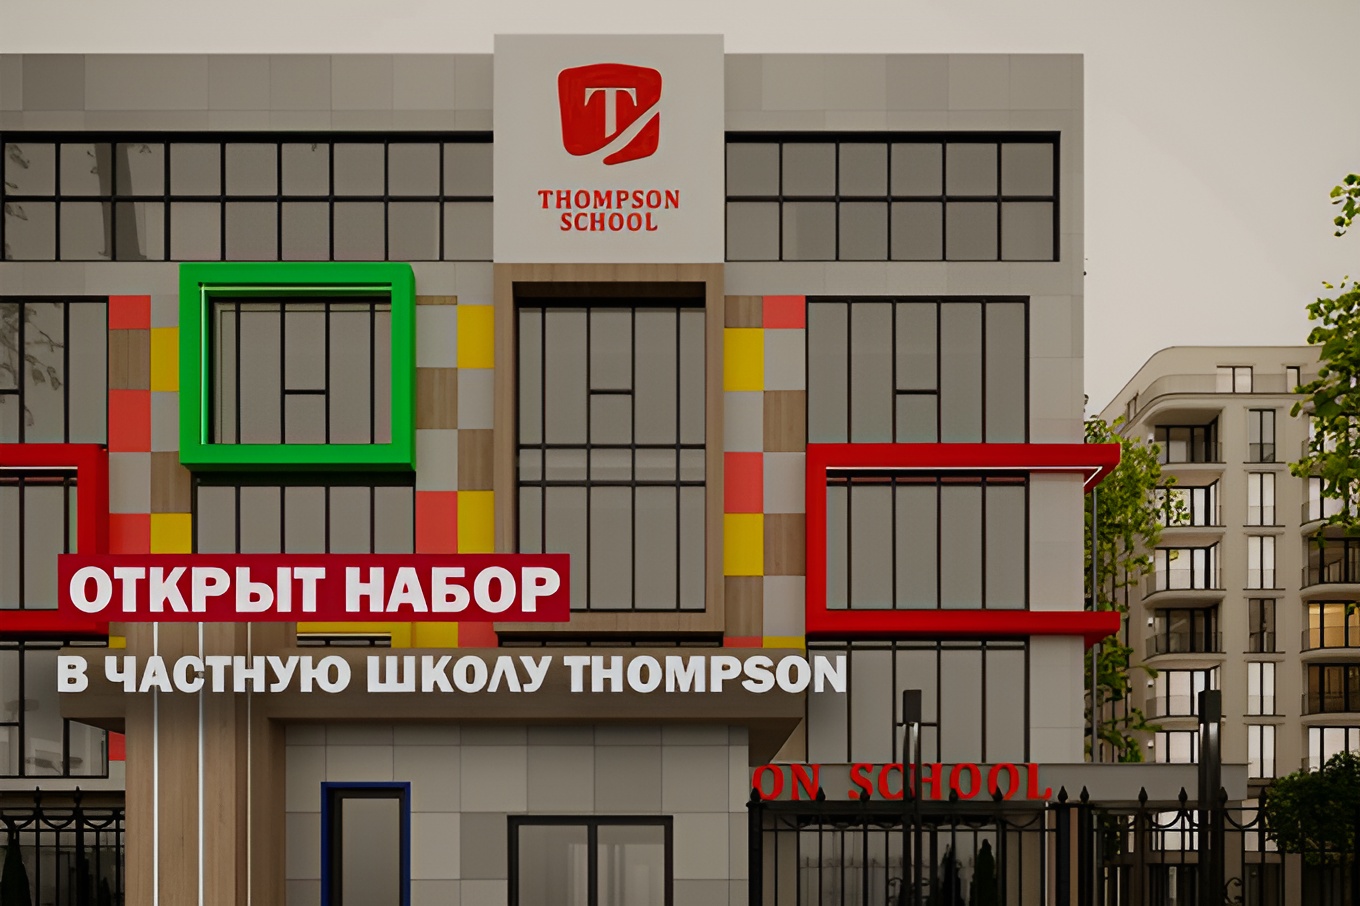 Частная школа Тhompson school открывает второй филиал в Ташкенте